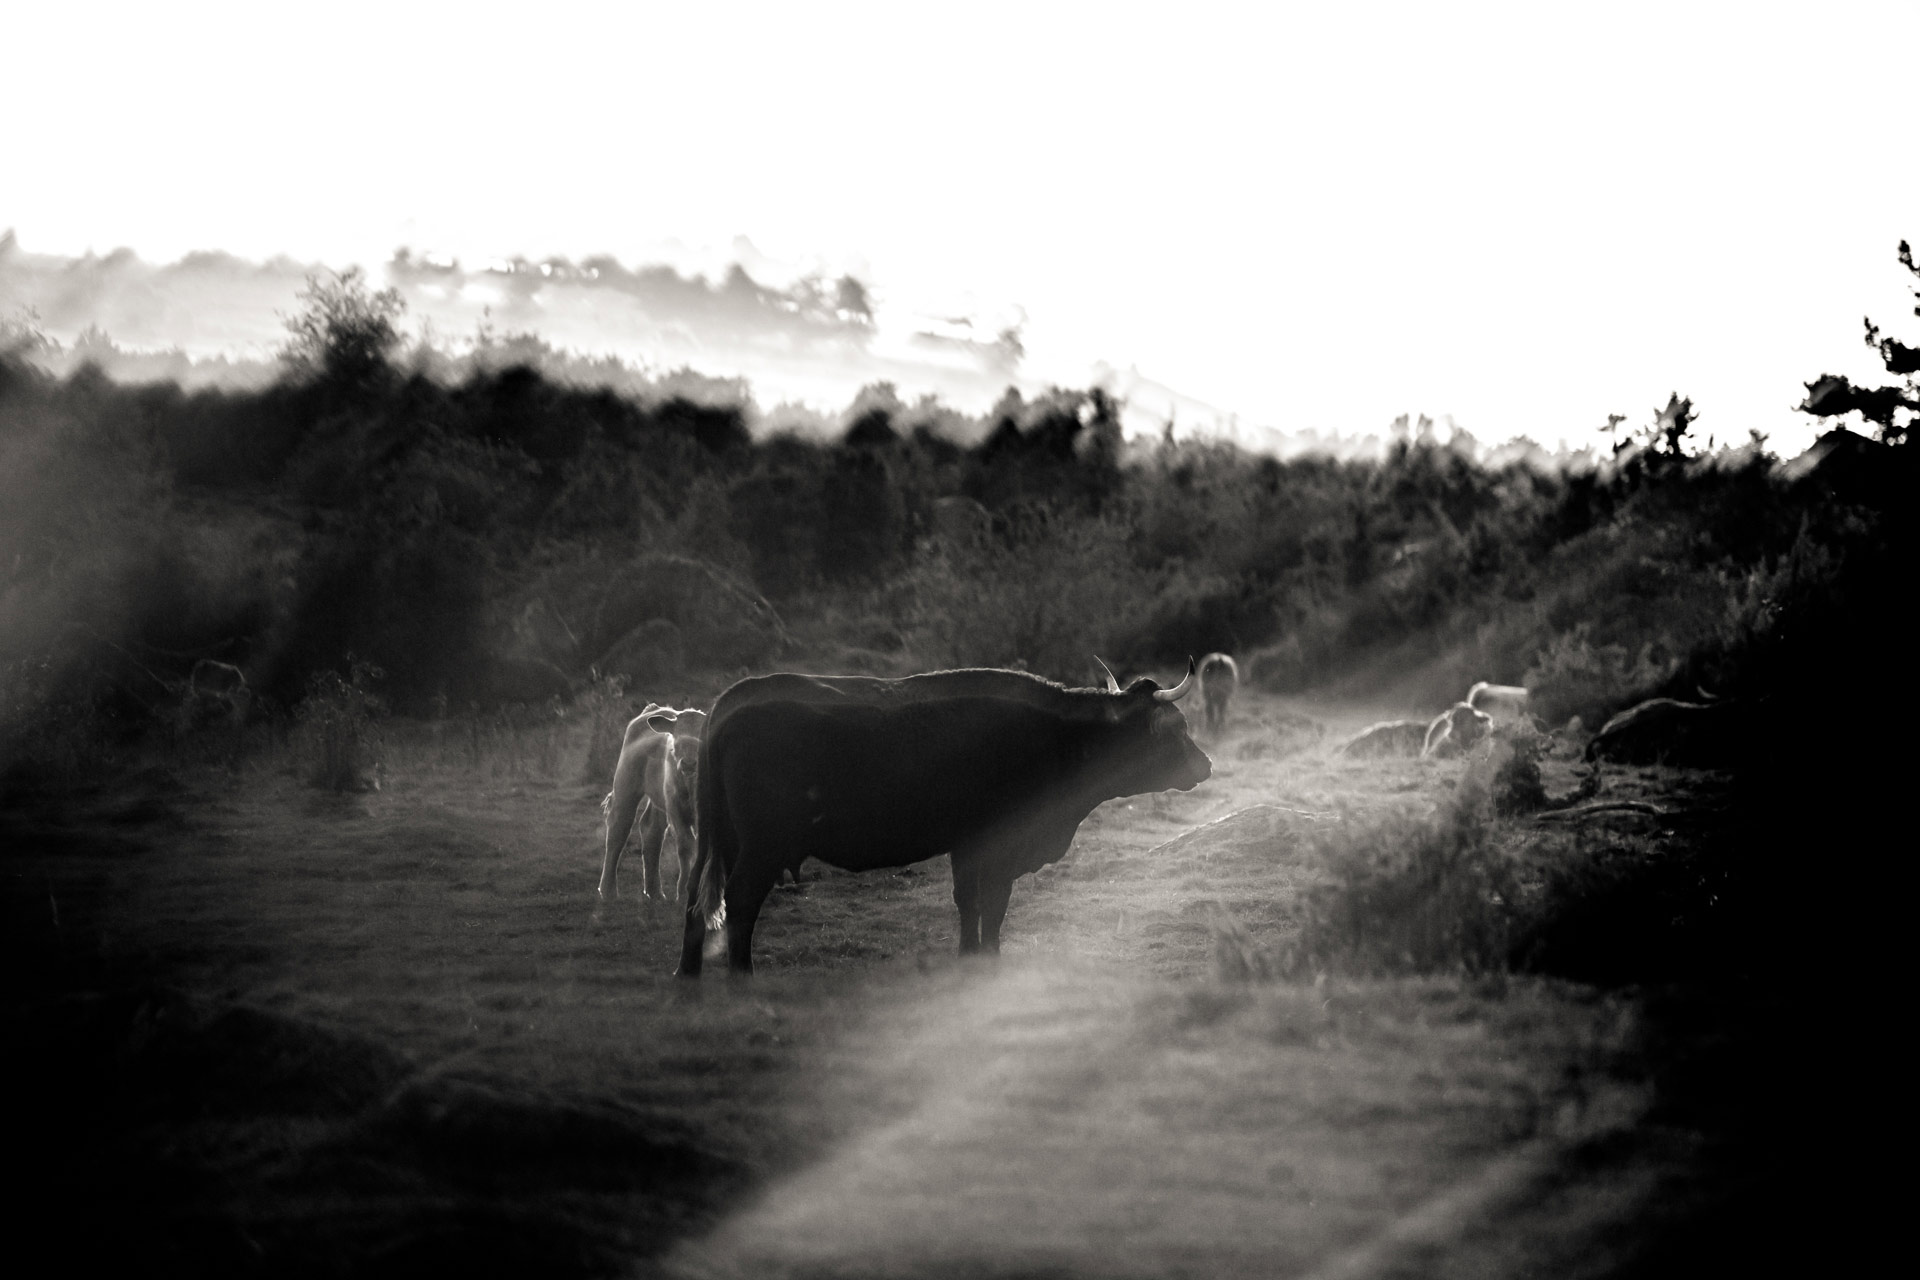 Vaches Salers en Auvergne